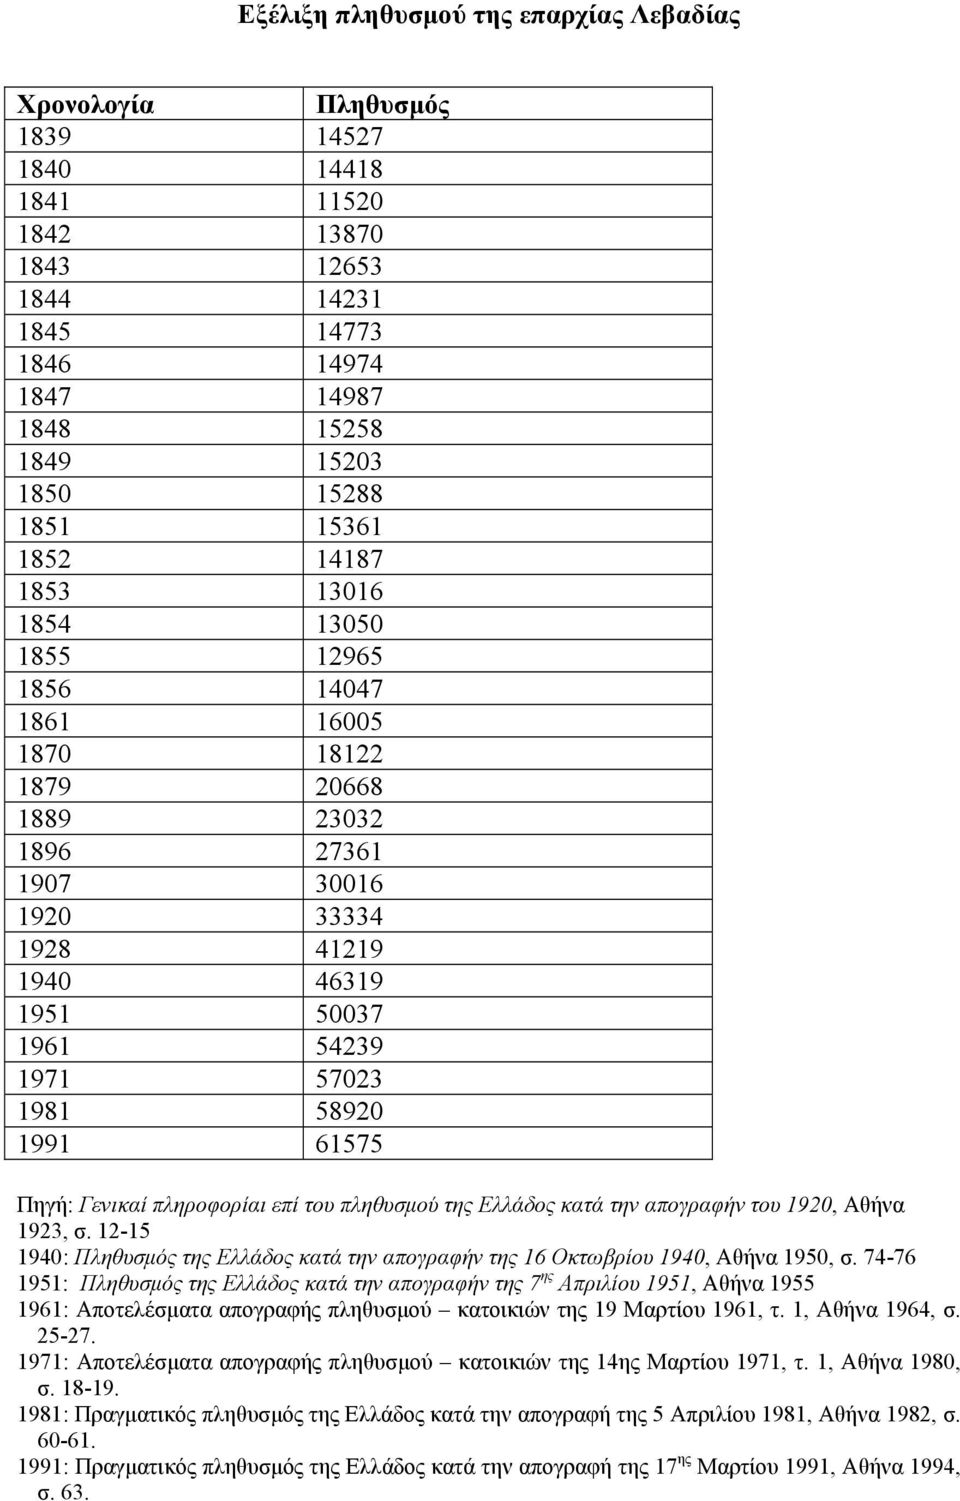 58920 1991 61575 Πηγή: Γενικαί πληροφορίαι επί του πληθυσμού της Ελλάδος κατά την απογραφήν του 1920, Αθήνα 1923, σ.